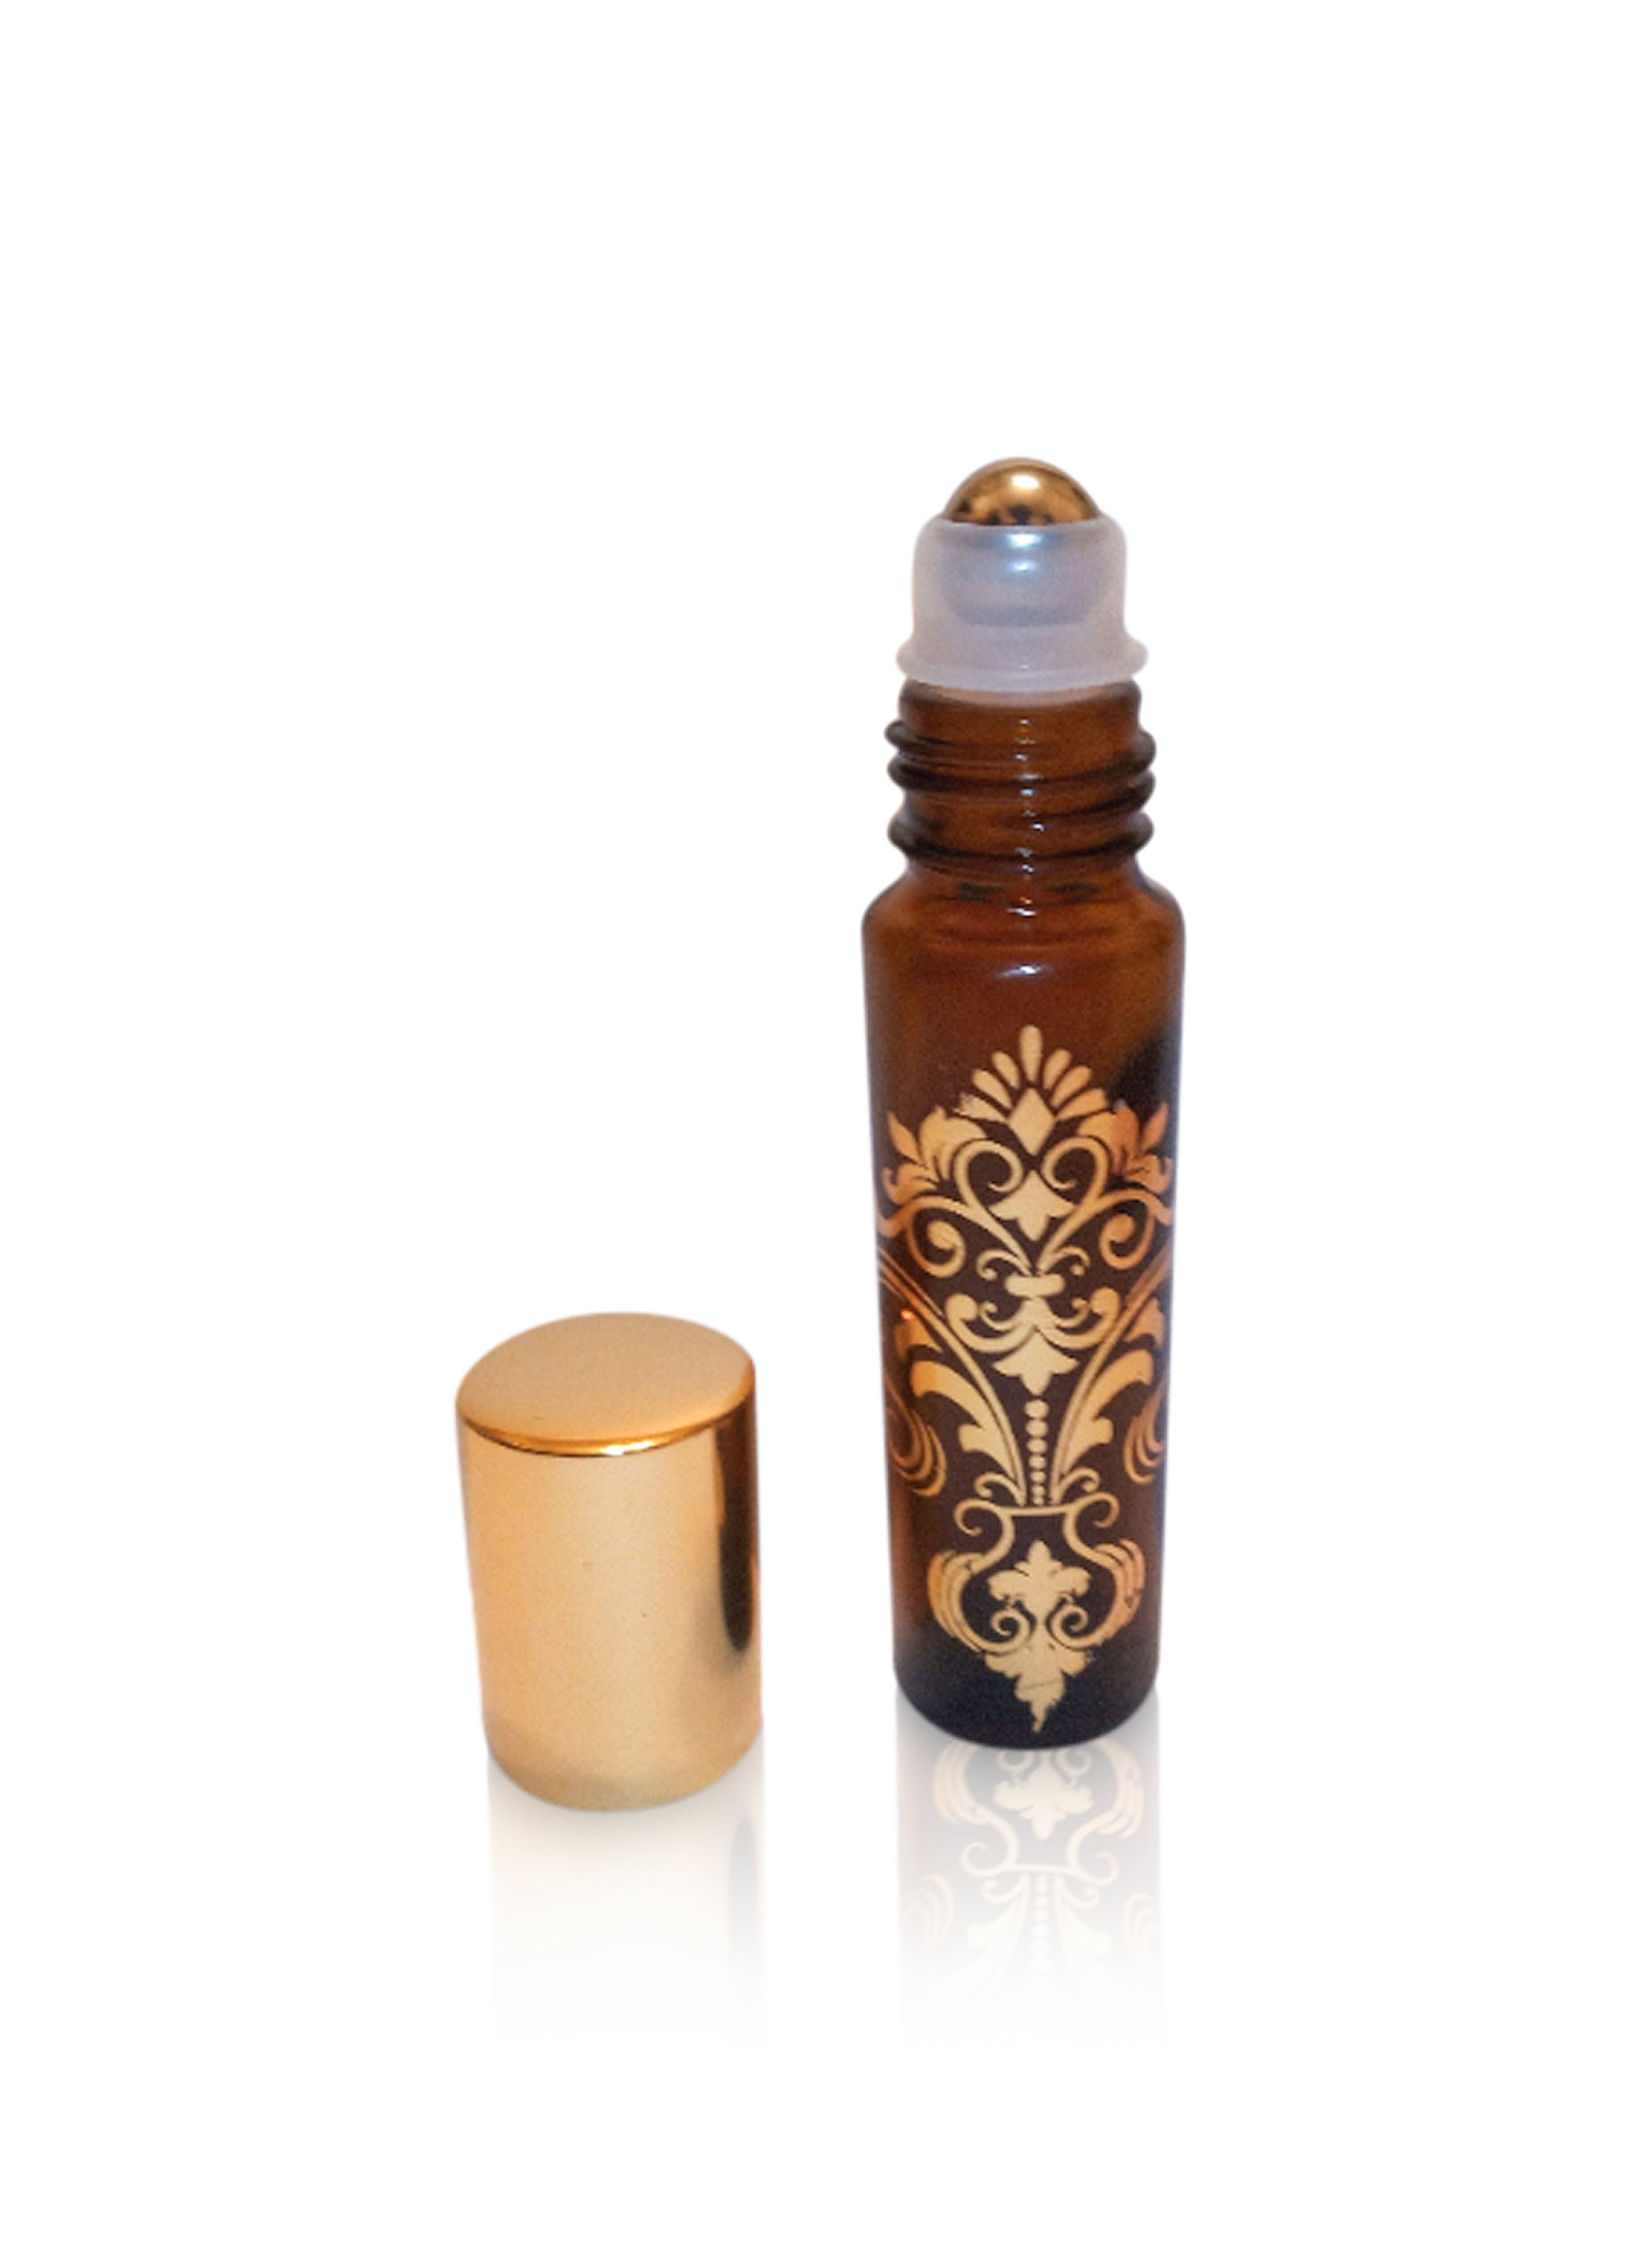 Chanel CHANCE type body oil-Women's Perfume- Alcohol Free Designer Inspired Fragrance  Body Oils -7 ml 10 ml 15 ml 30 ml